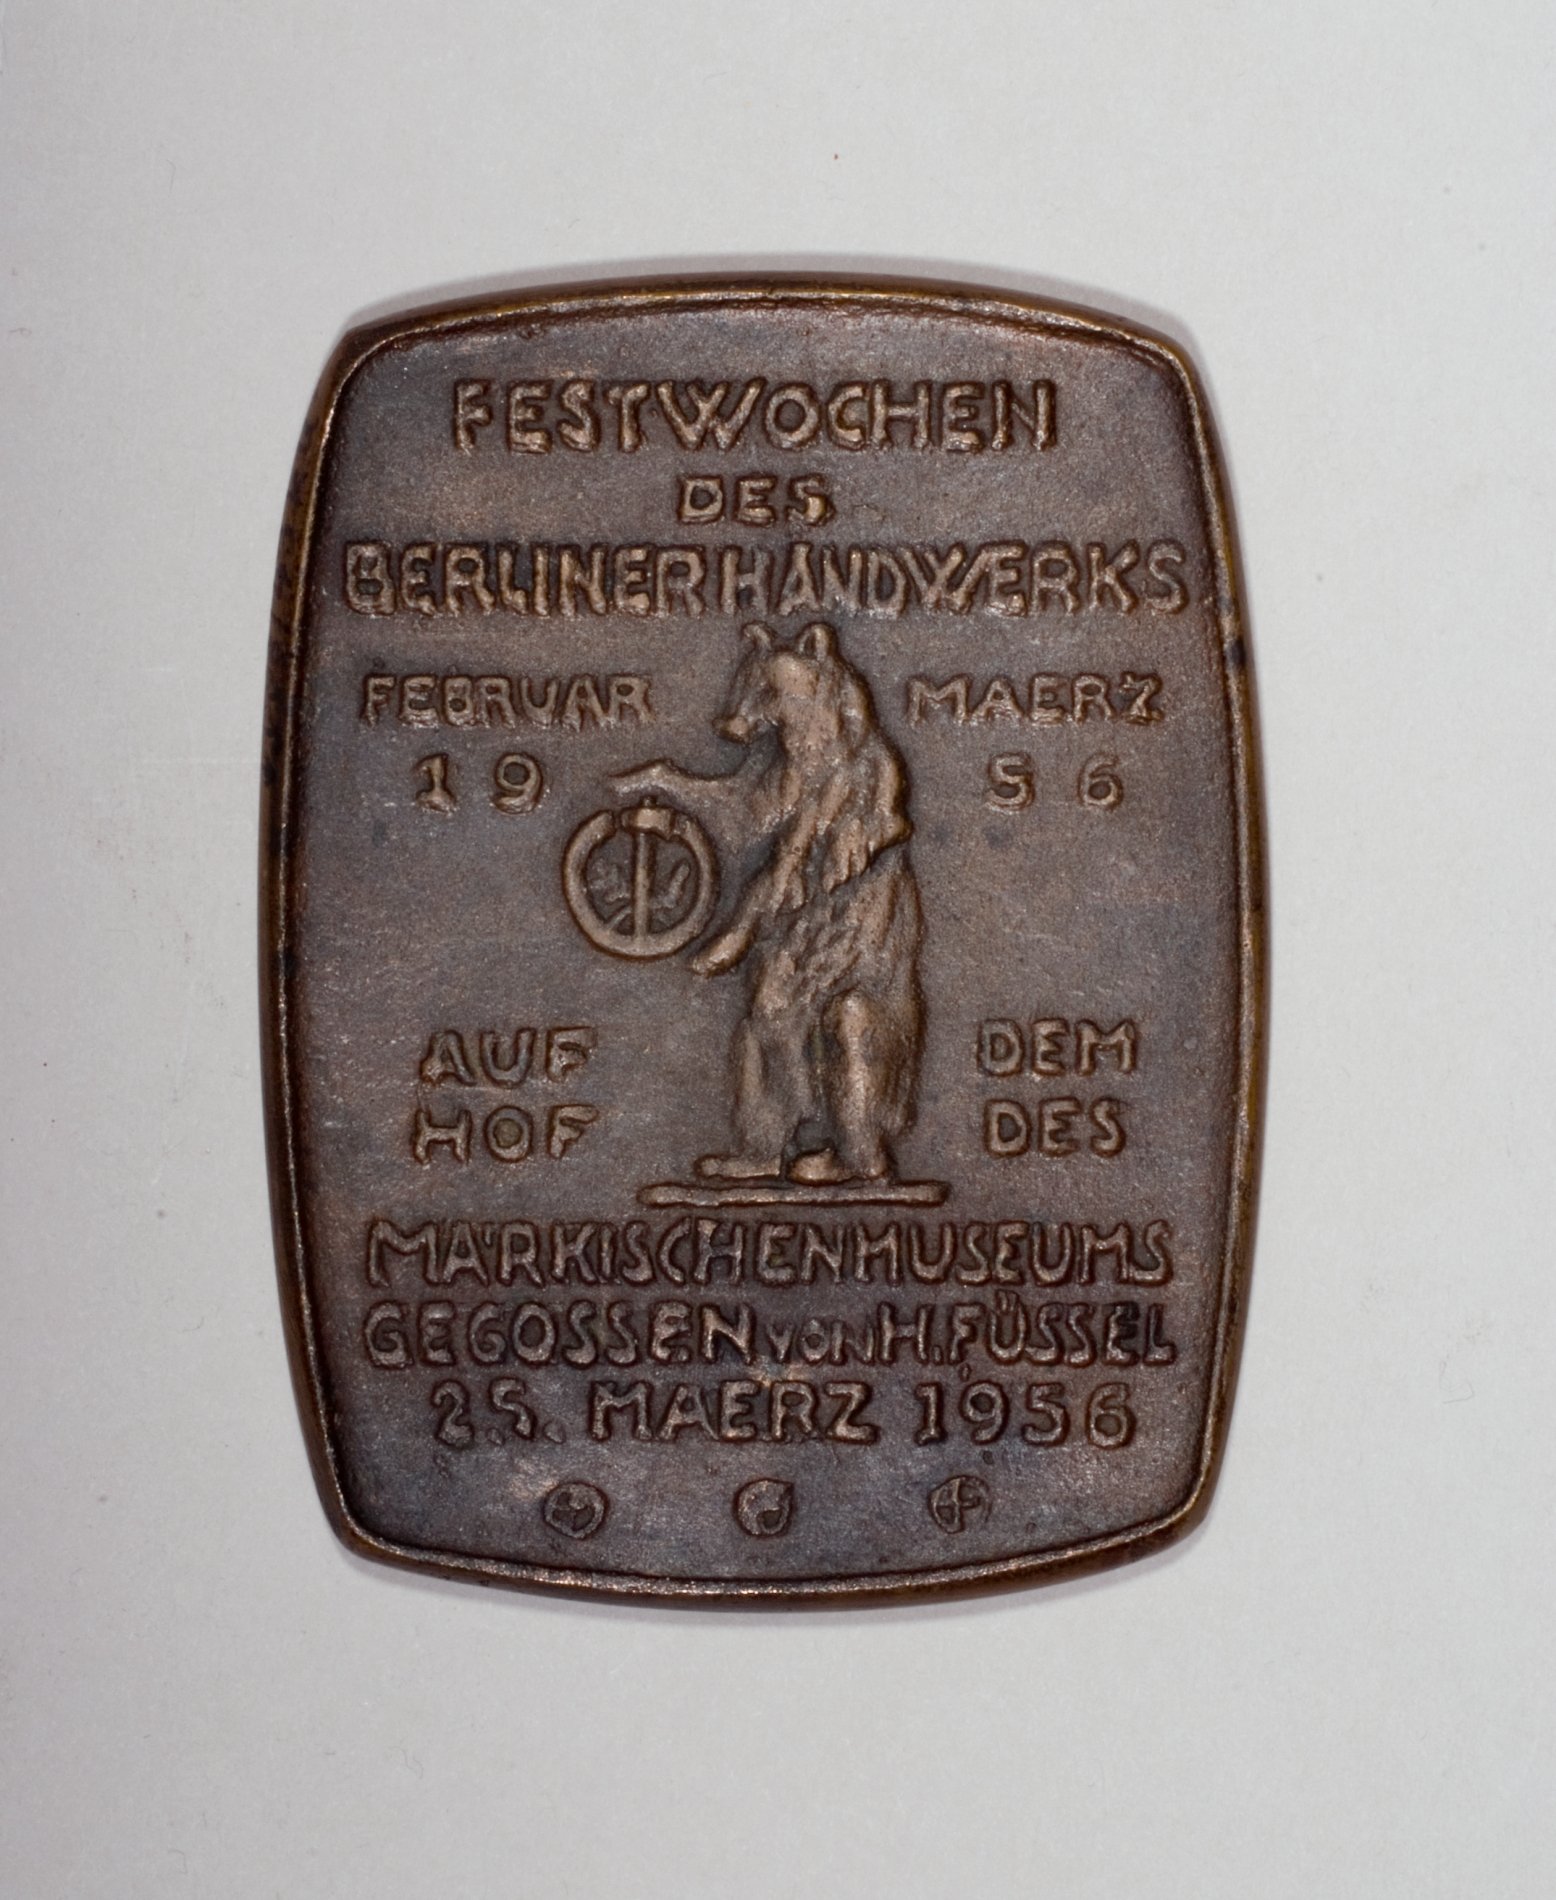 Medaille "Festwochen des Berliner Handwerks im Märkischen Museum" (Stiftung Domäne Dahlem - Landgut und Museum, Weiternutzung nur mit Genehmigung des Museums CC BY-NC-SA)